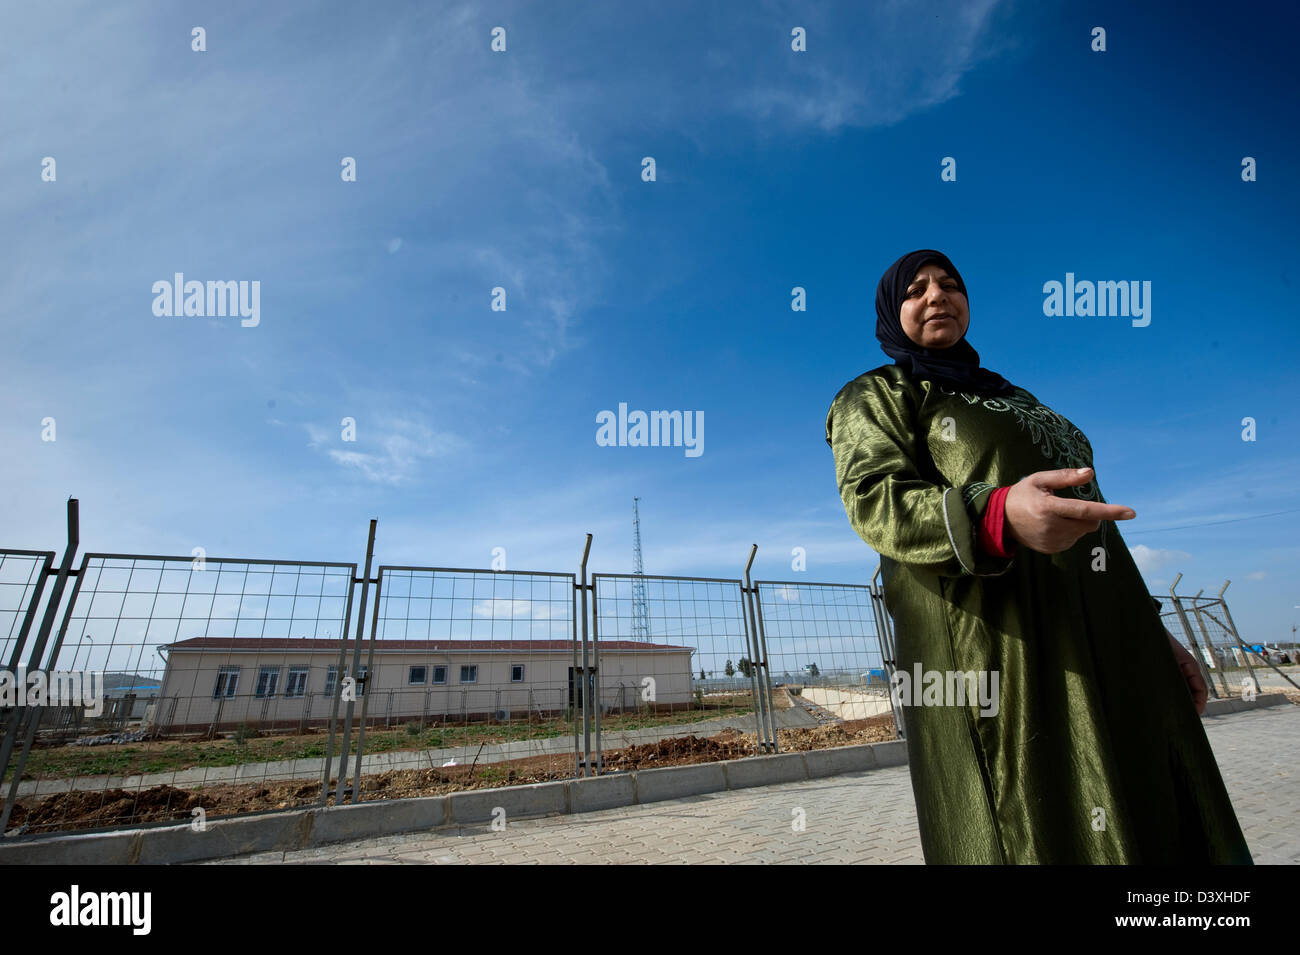 Kilis, Turkey, February 25, 2013: the Kilis refugee camp Stock Photo